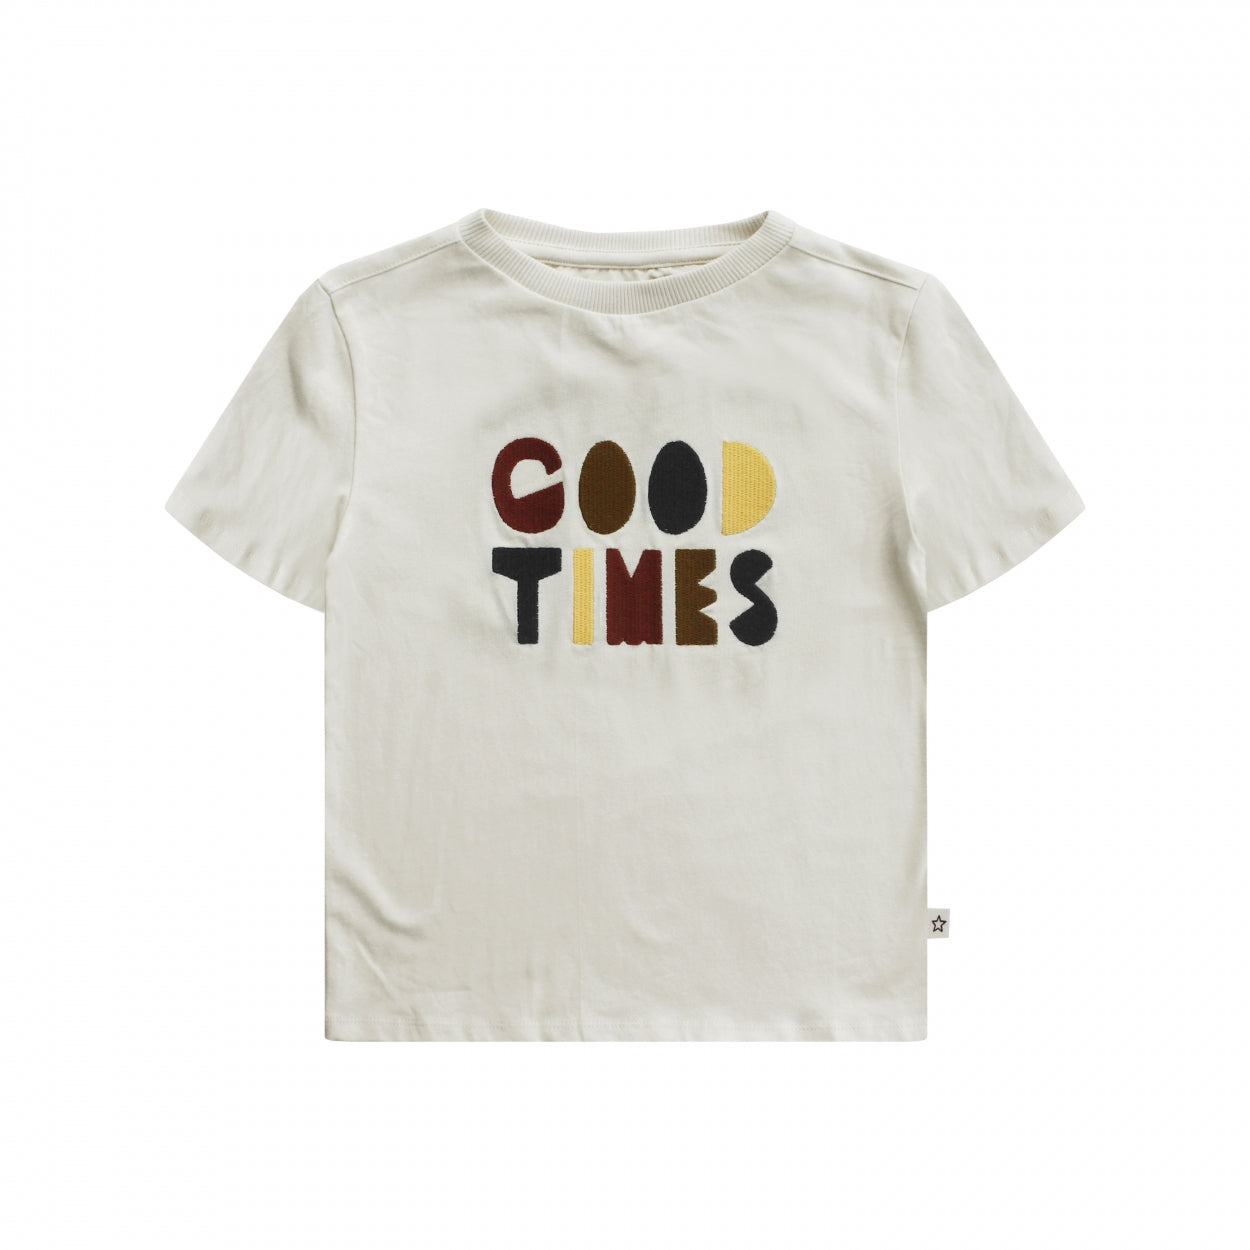 Jongens T-Shirt Good Times | Adri van Your Wishes in de kleur Ivory in maat 134/140.